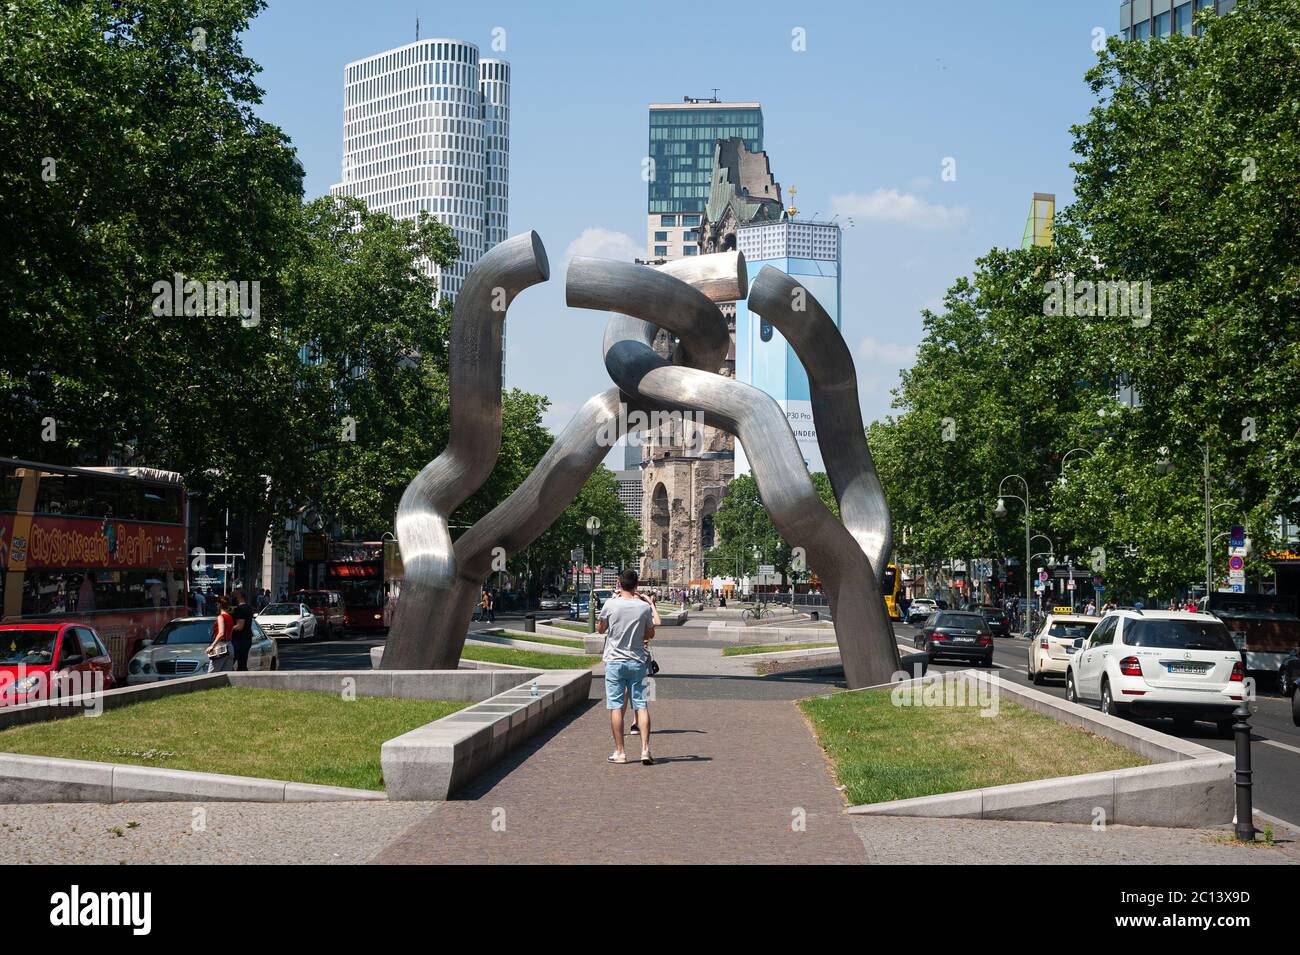 06.06.2019, Berlin, Allemagne, Europe - vue sur la ville de Berlin Ouest avec la 'Sculpture de Berlin' (chaîne brisée) le long de Tauentzienstrasse. Banque D'Images